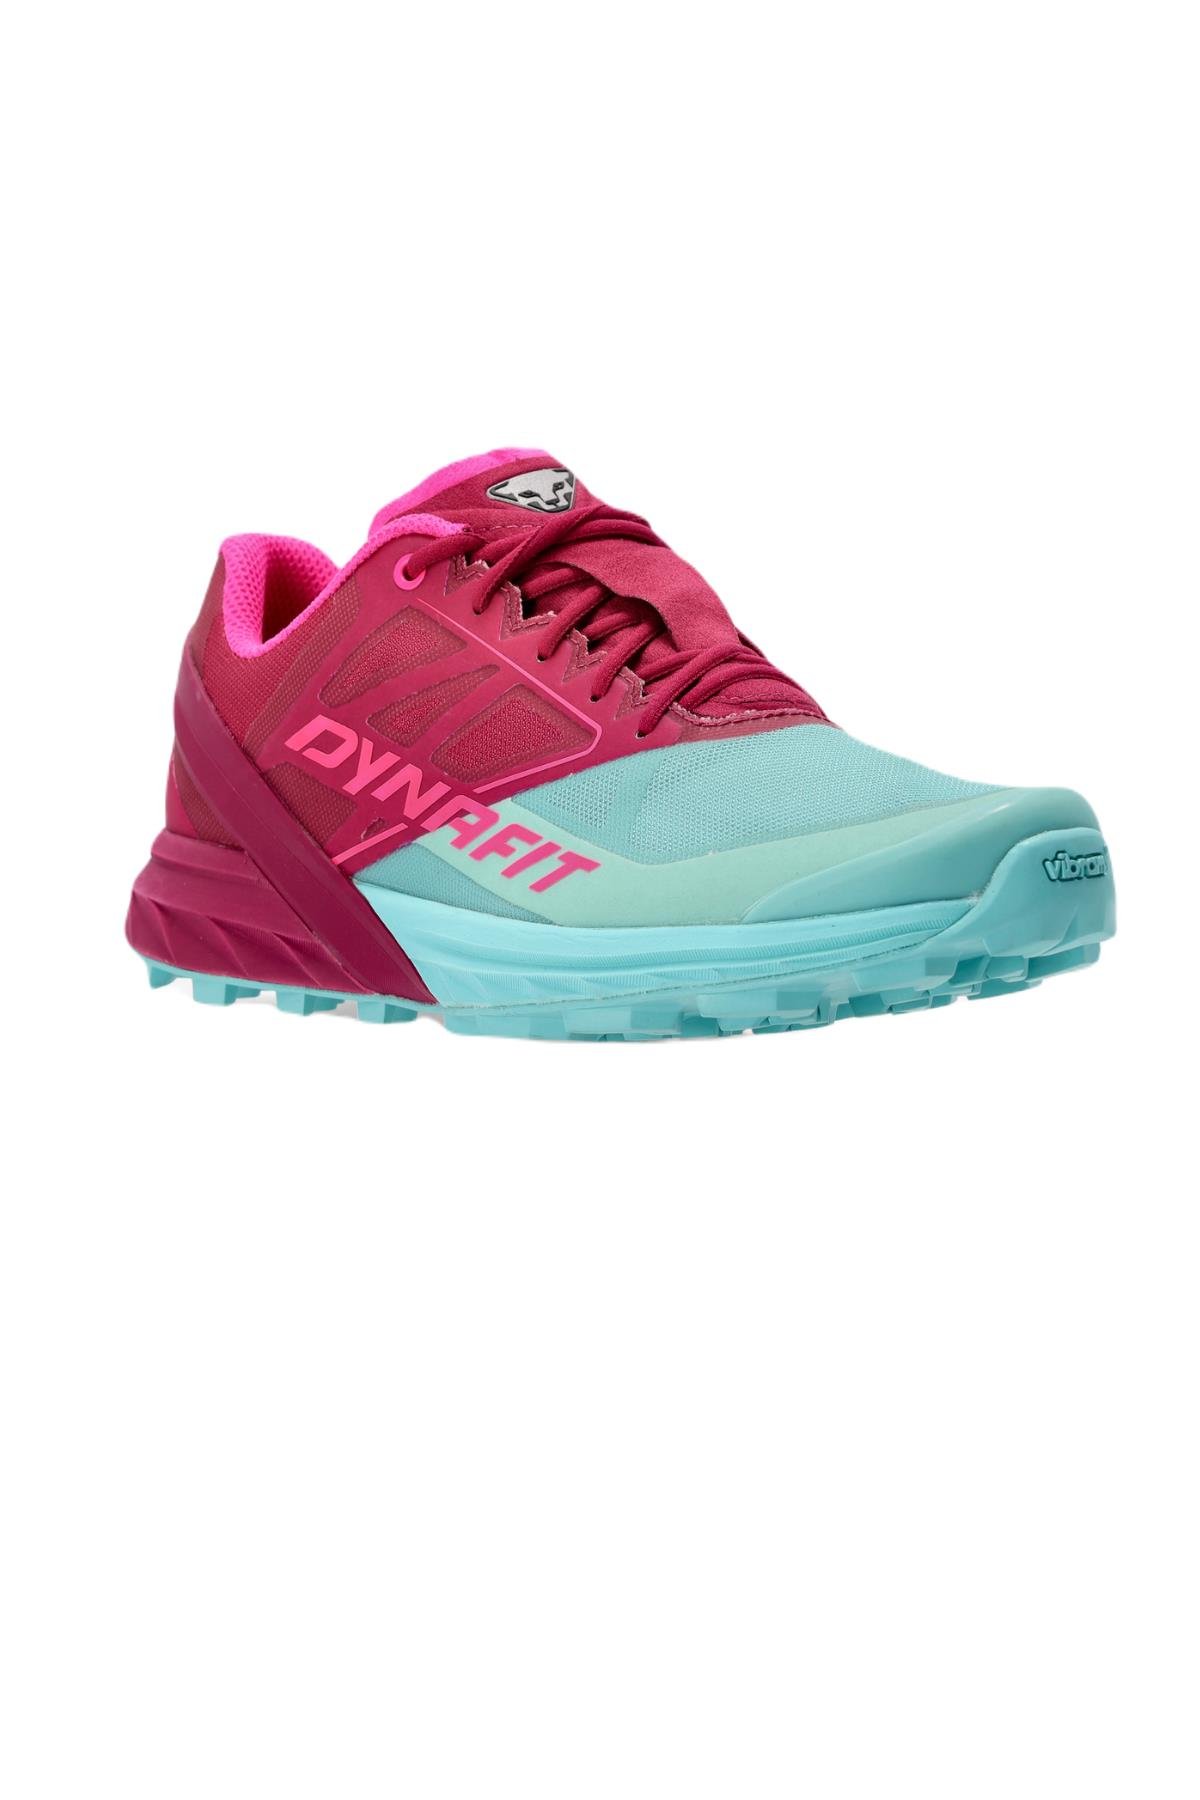 Dynafit Kadın Alpine Koşu Ayakkabısı Pembe/Mavi